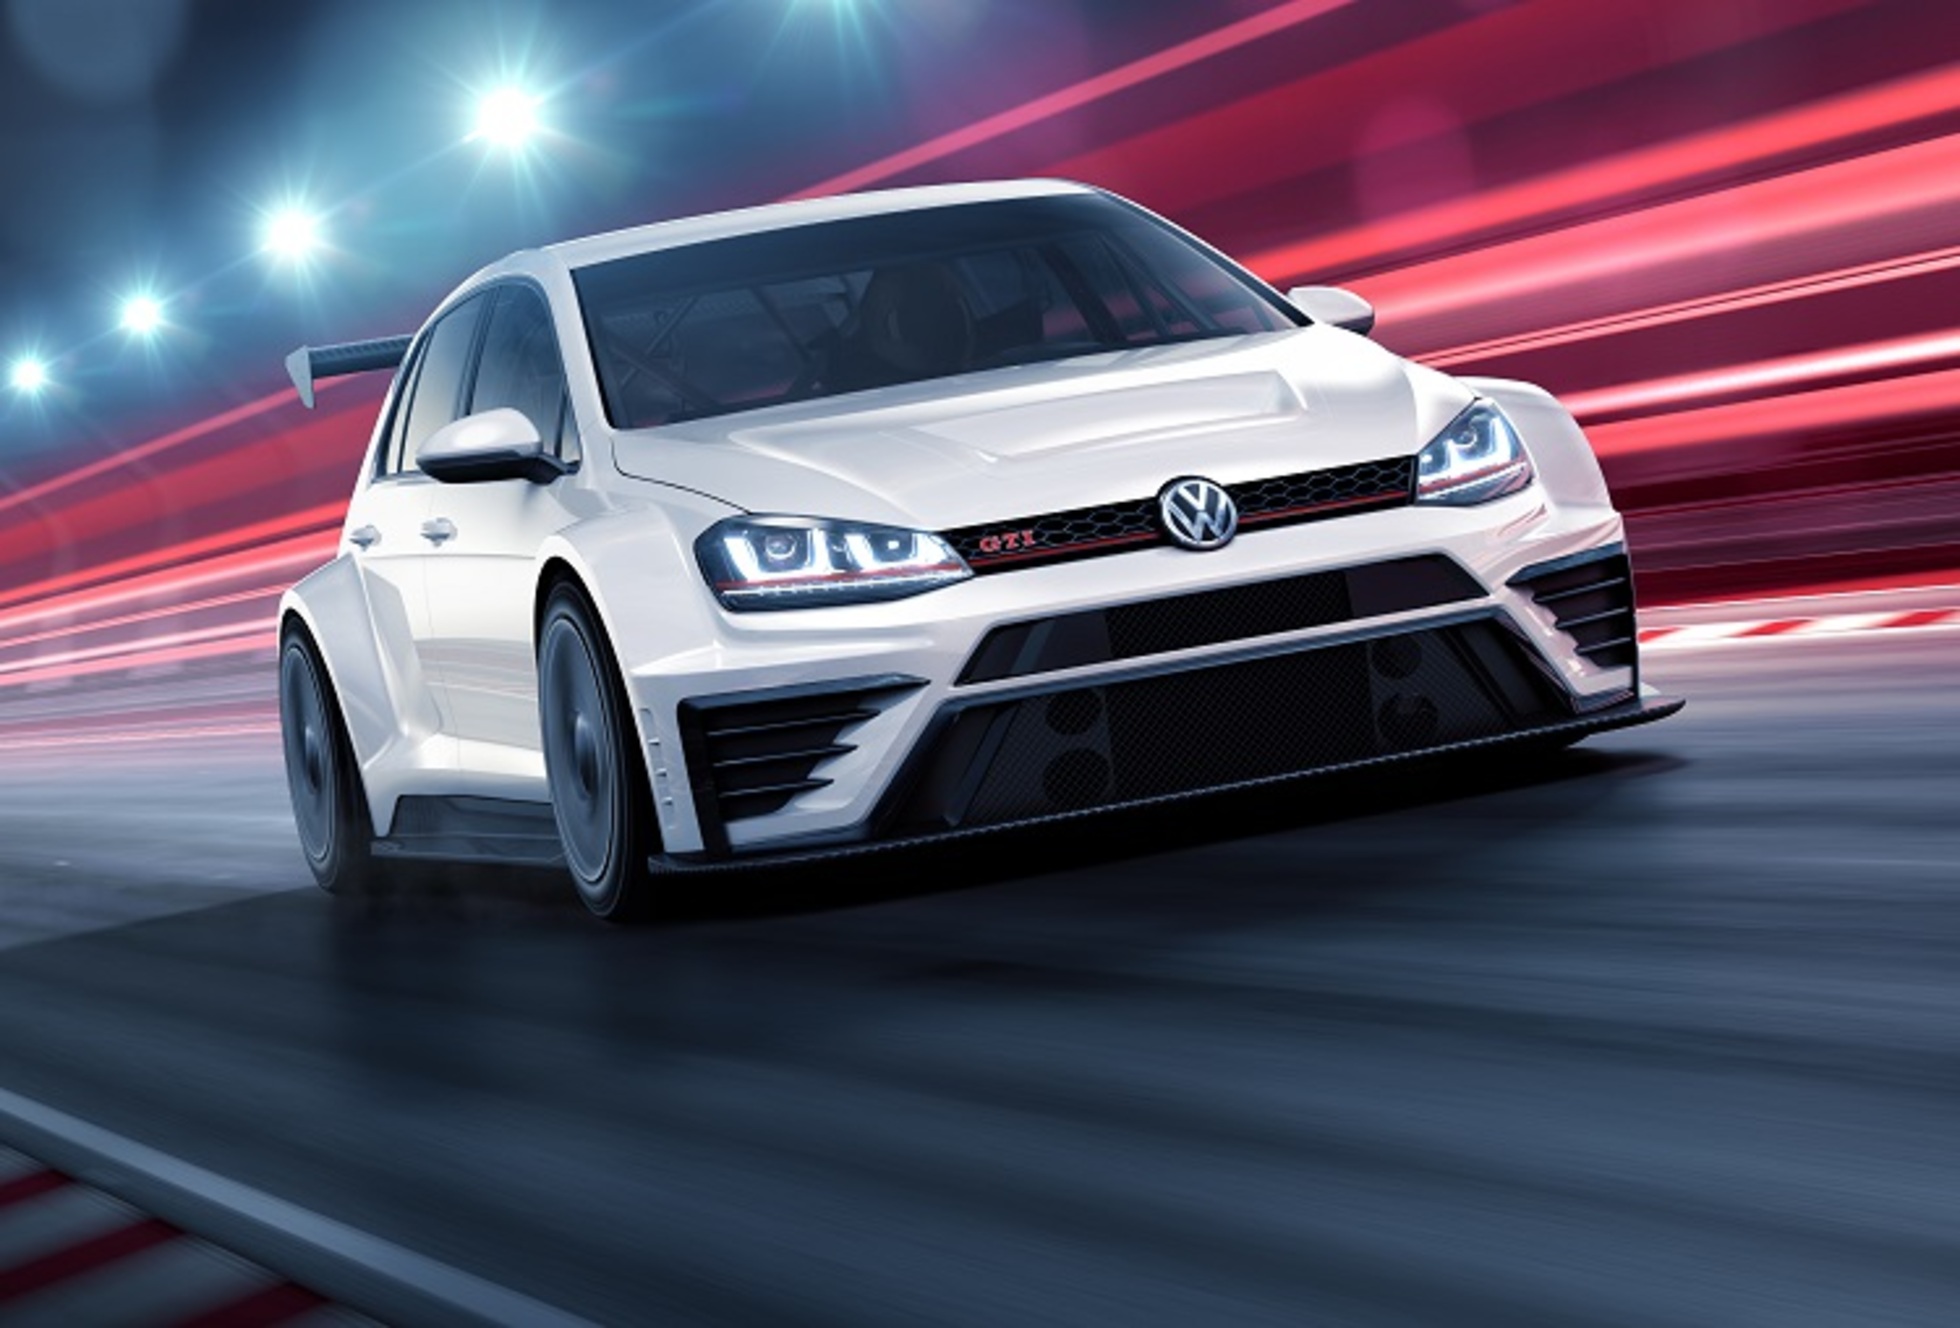 Volkswagen Polo GTI - Besser als der Golf GTI? » Motoreport